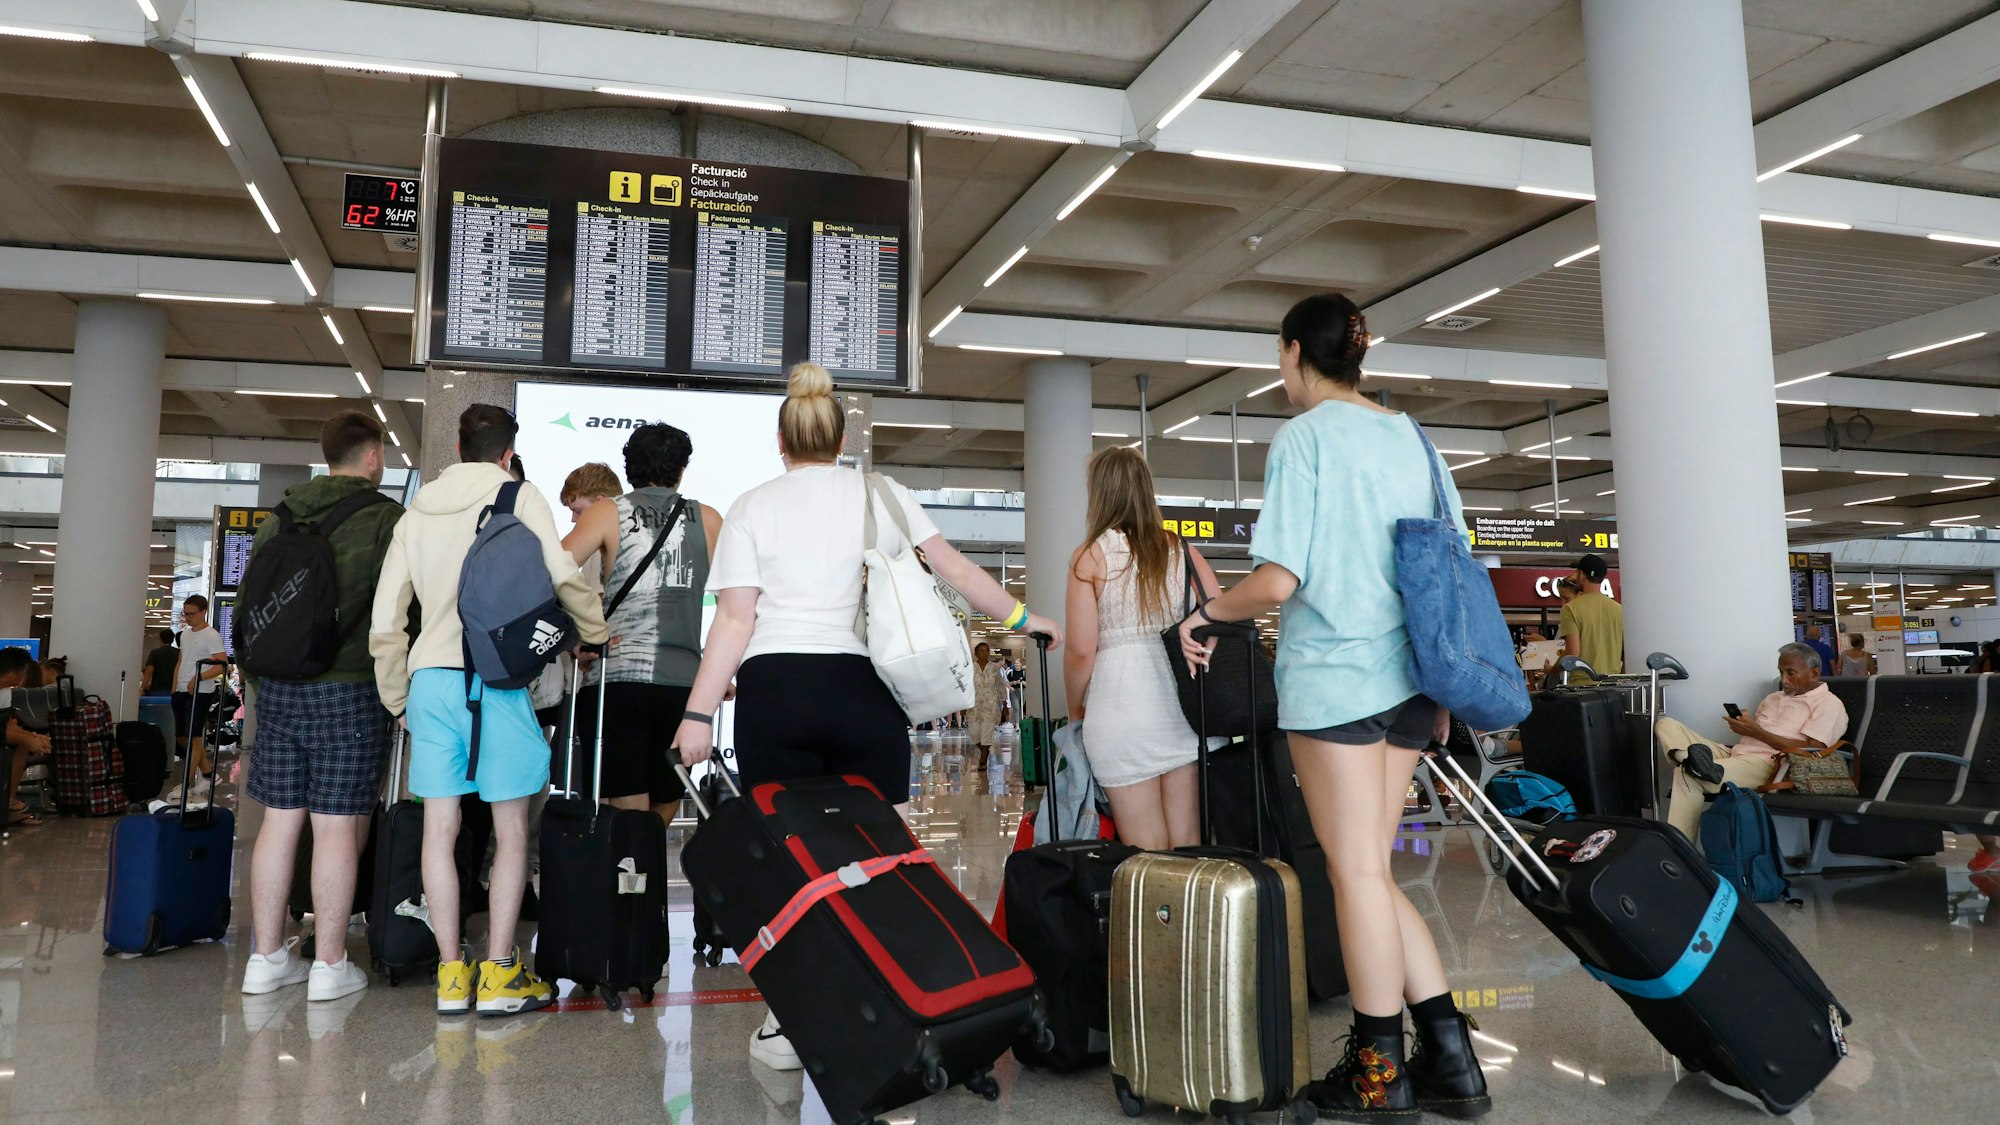 Reisende schauen am Flughafen auf die Anzeigetafel mit den Flugzeiten.